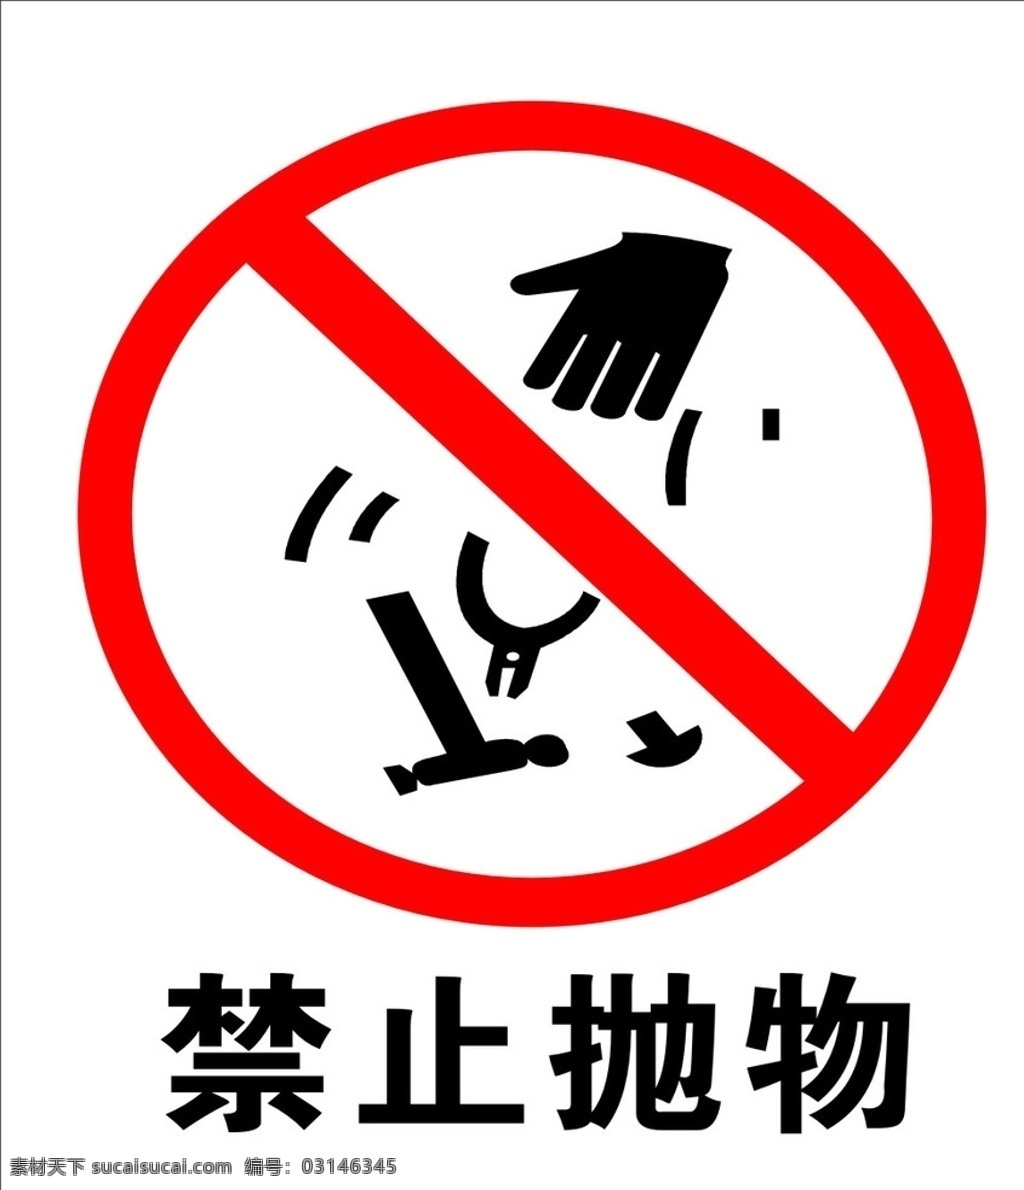 禁止标语 禁止标志 禁止标示 禁止抛物 警示标志 标志图标 公共标识标志